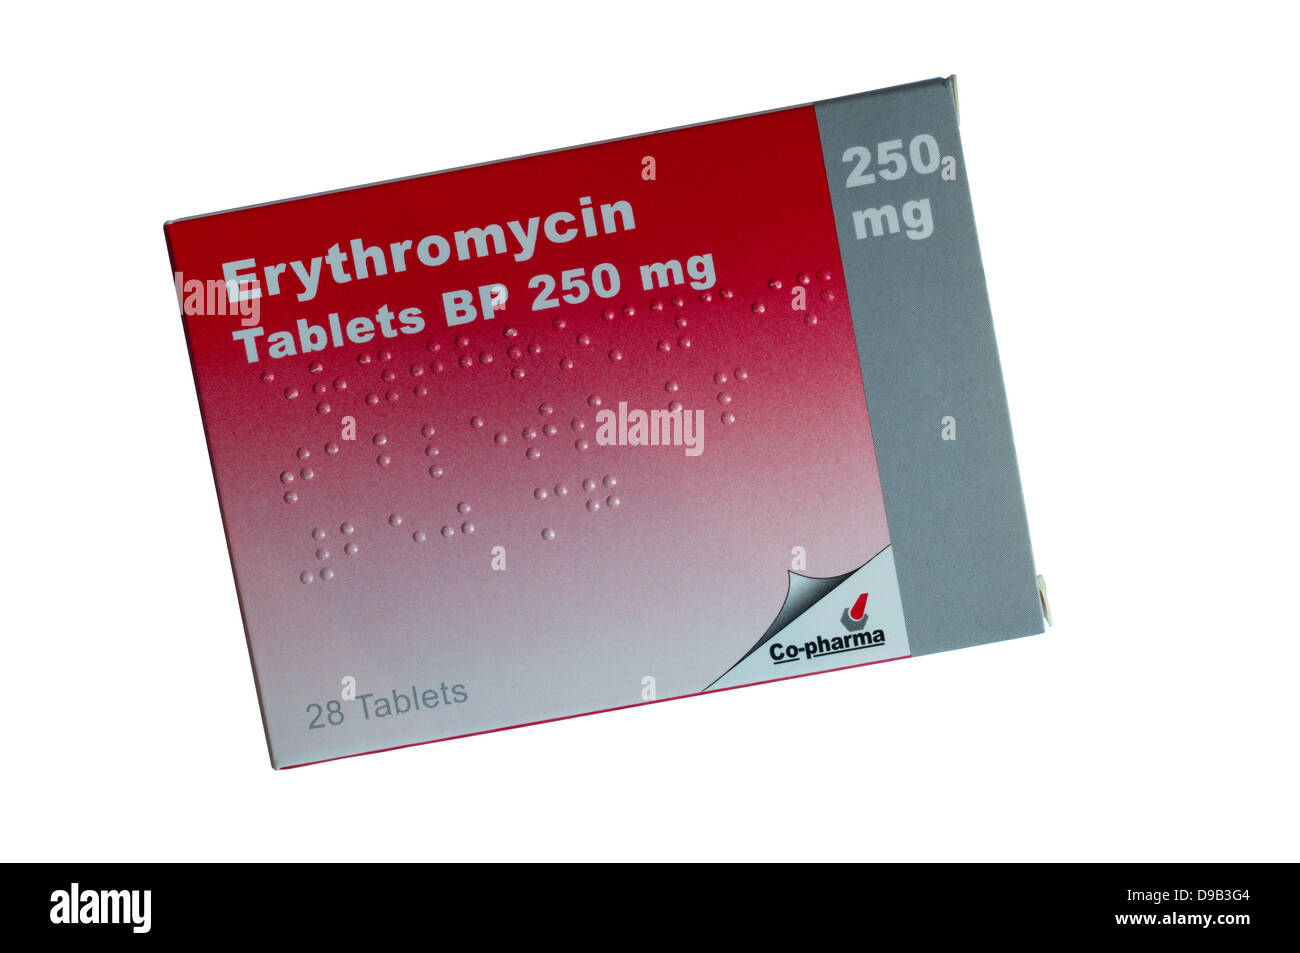 Ein Paket von Erythromycin Antibiotika-Tabletten Stockfotografie - Alamy